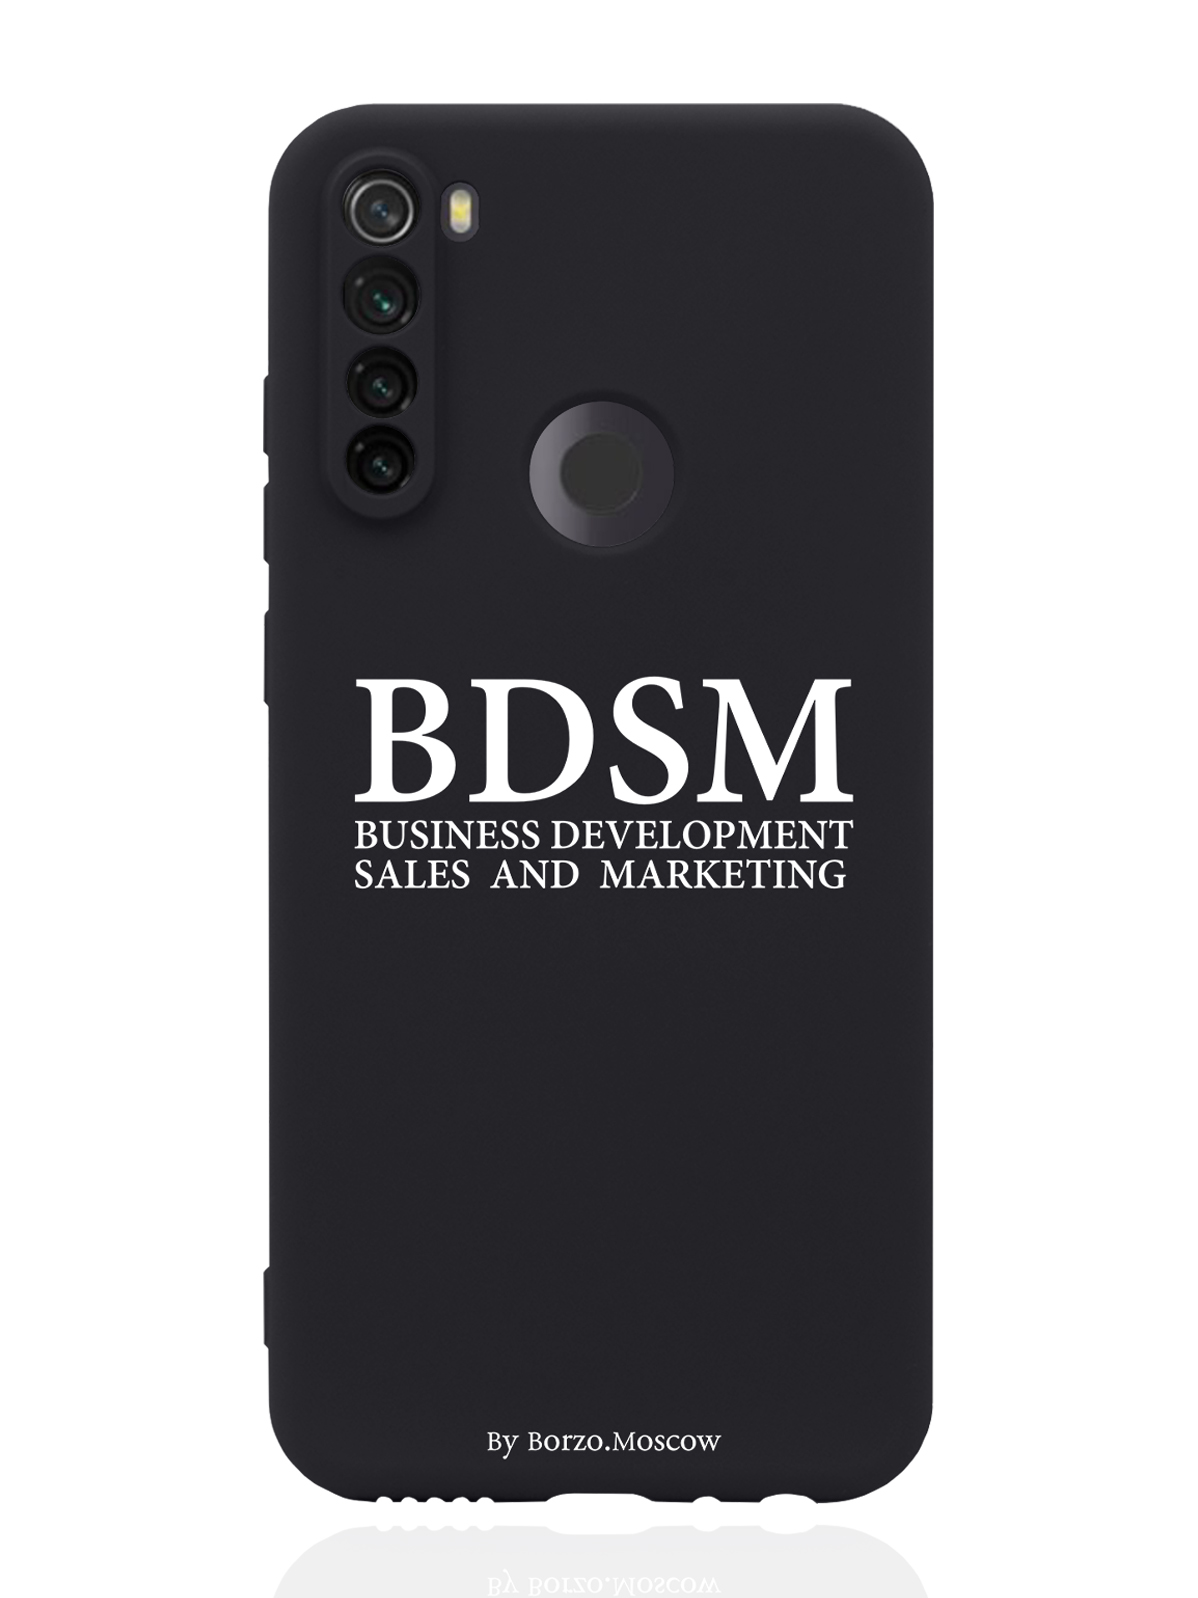 Чехол Borzo.Moscow для Xiaomi Redmi Note 8T BDSM черный